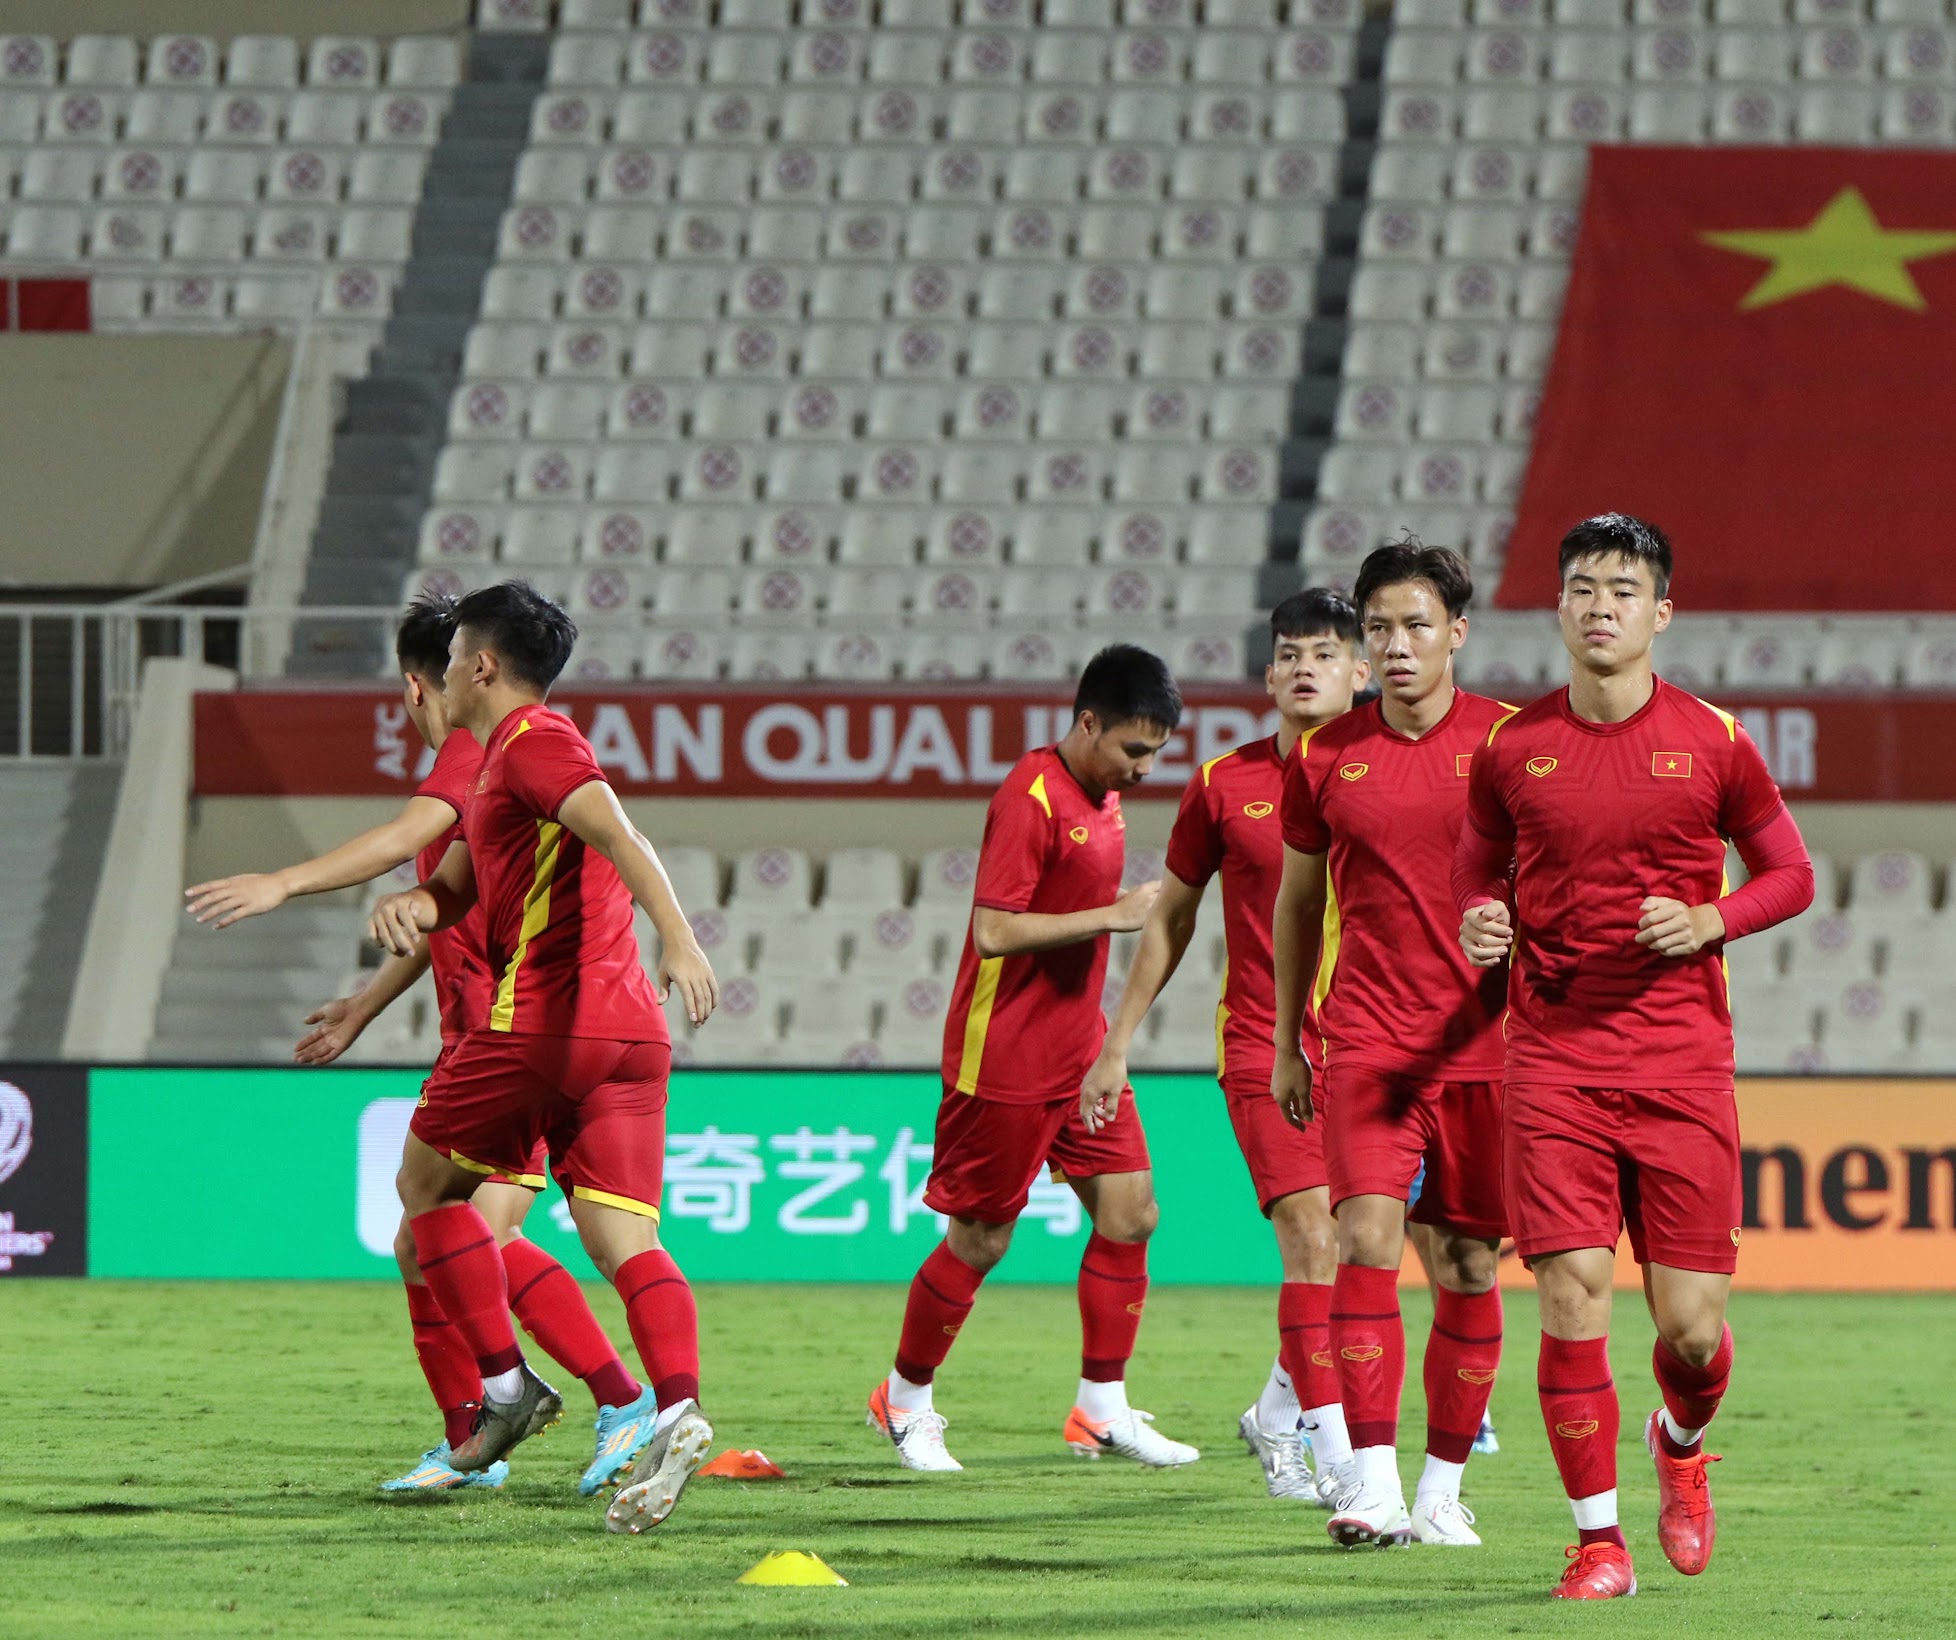 Netizen Trung Quốc nói gì trước giờ bóng lăn: 20 năm trước vào World Cup, 20 năm sau phải run sợ khi đối mặt Việt Nam - Ảnh 2.